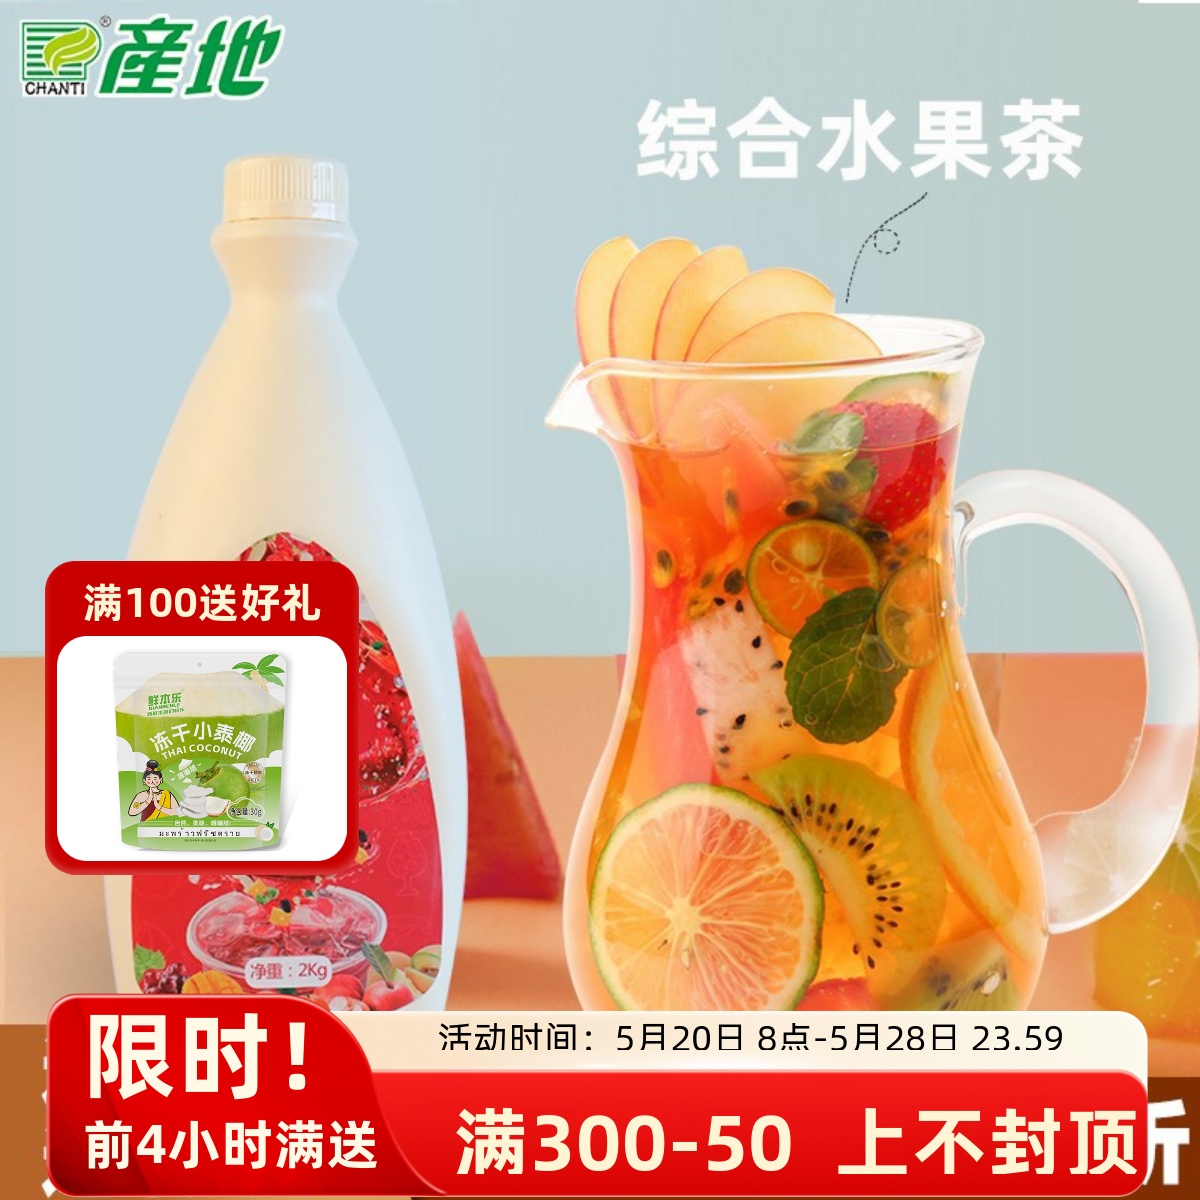 上海产地综合水果茶酱浓缩果汁浓缩果味饮料茶连锁品牌奶茶店使用